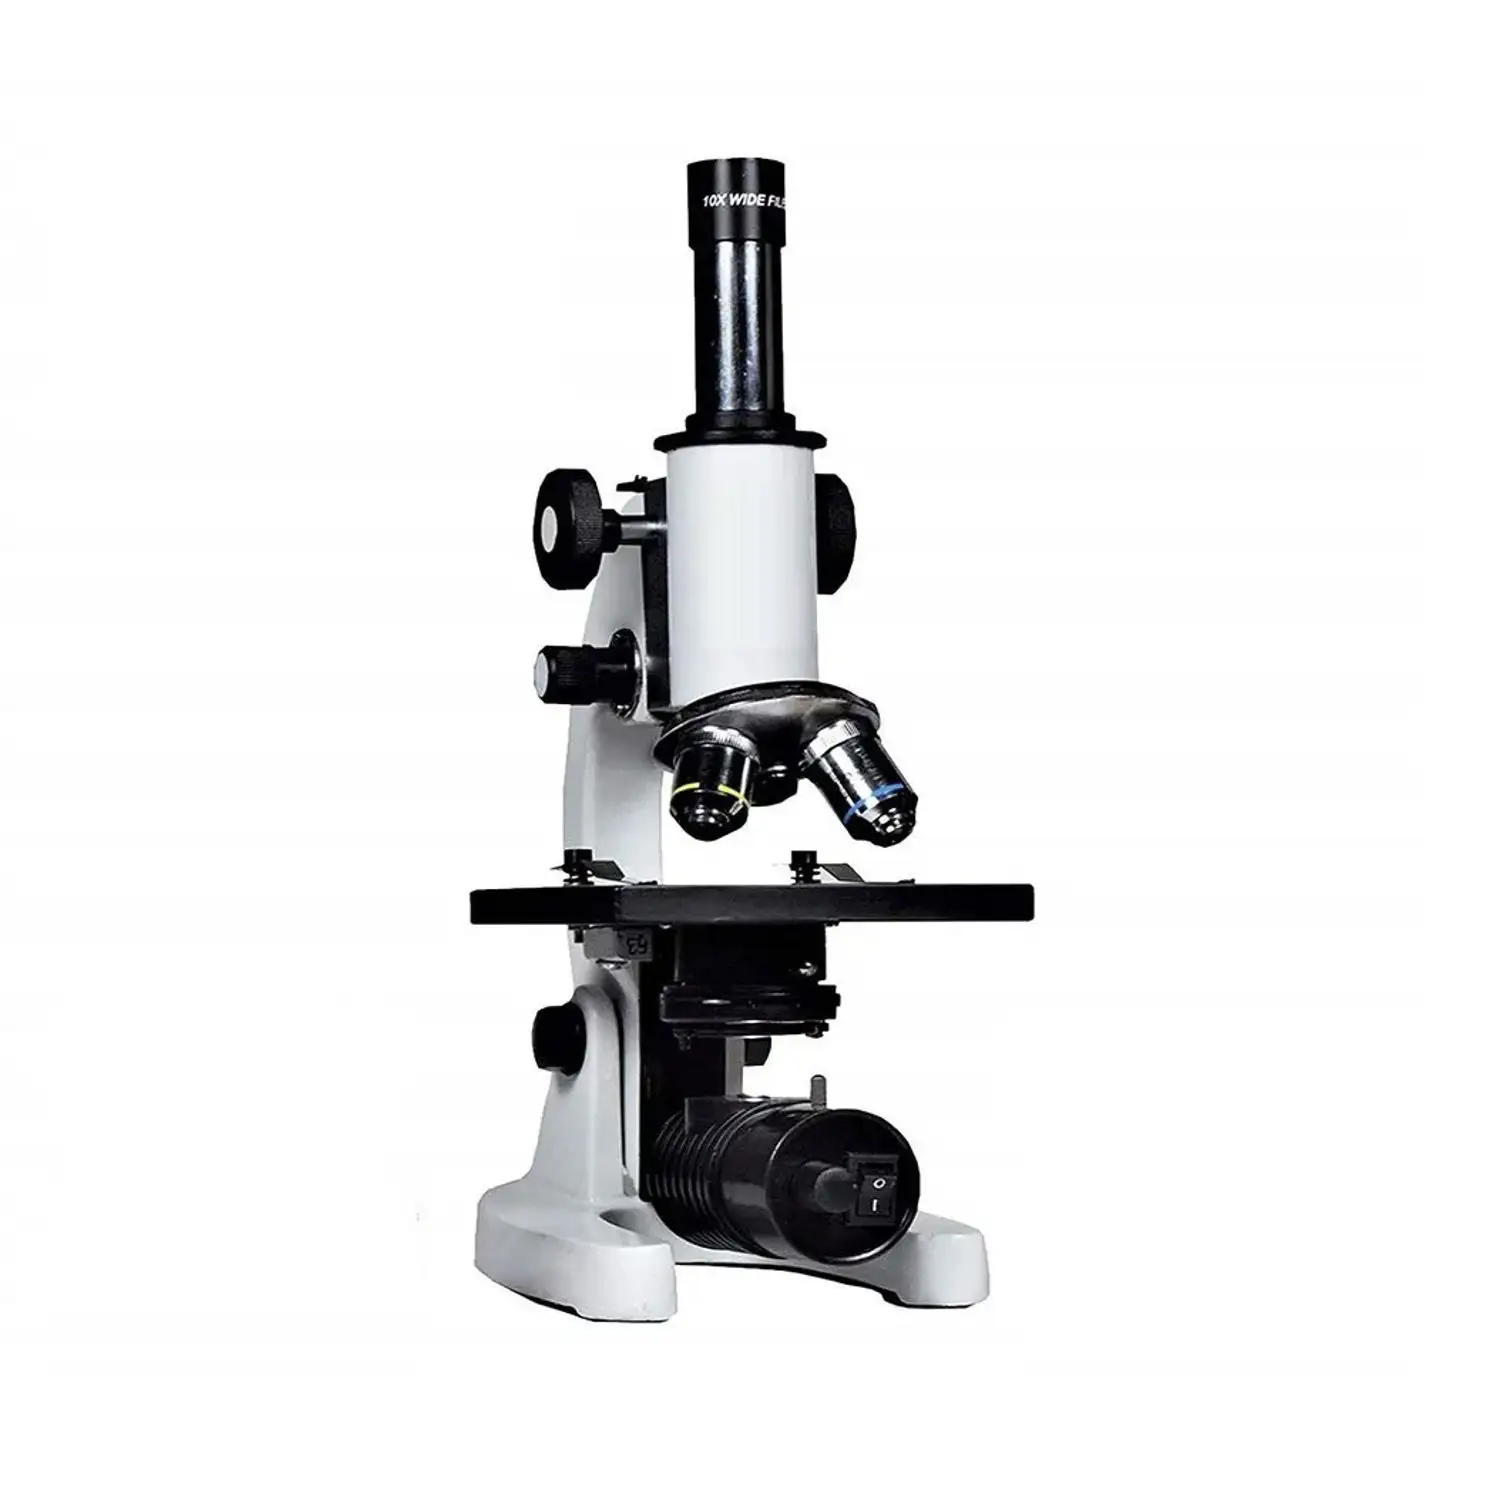 Mikroskop Siswa Monokular untuk Ruang Kelas Biologi dan Laboratorium dari Delkolab